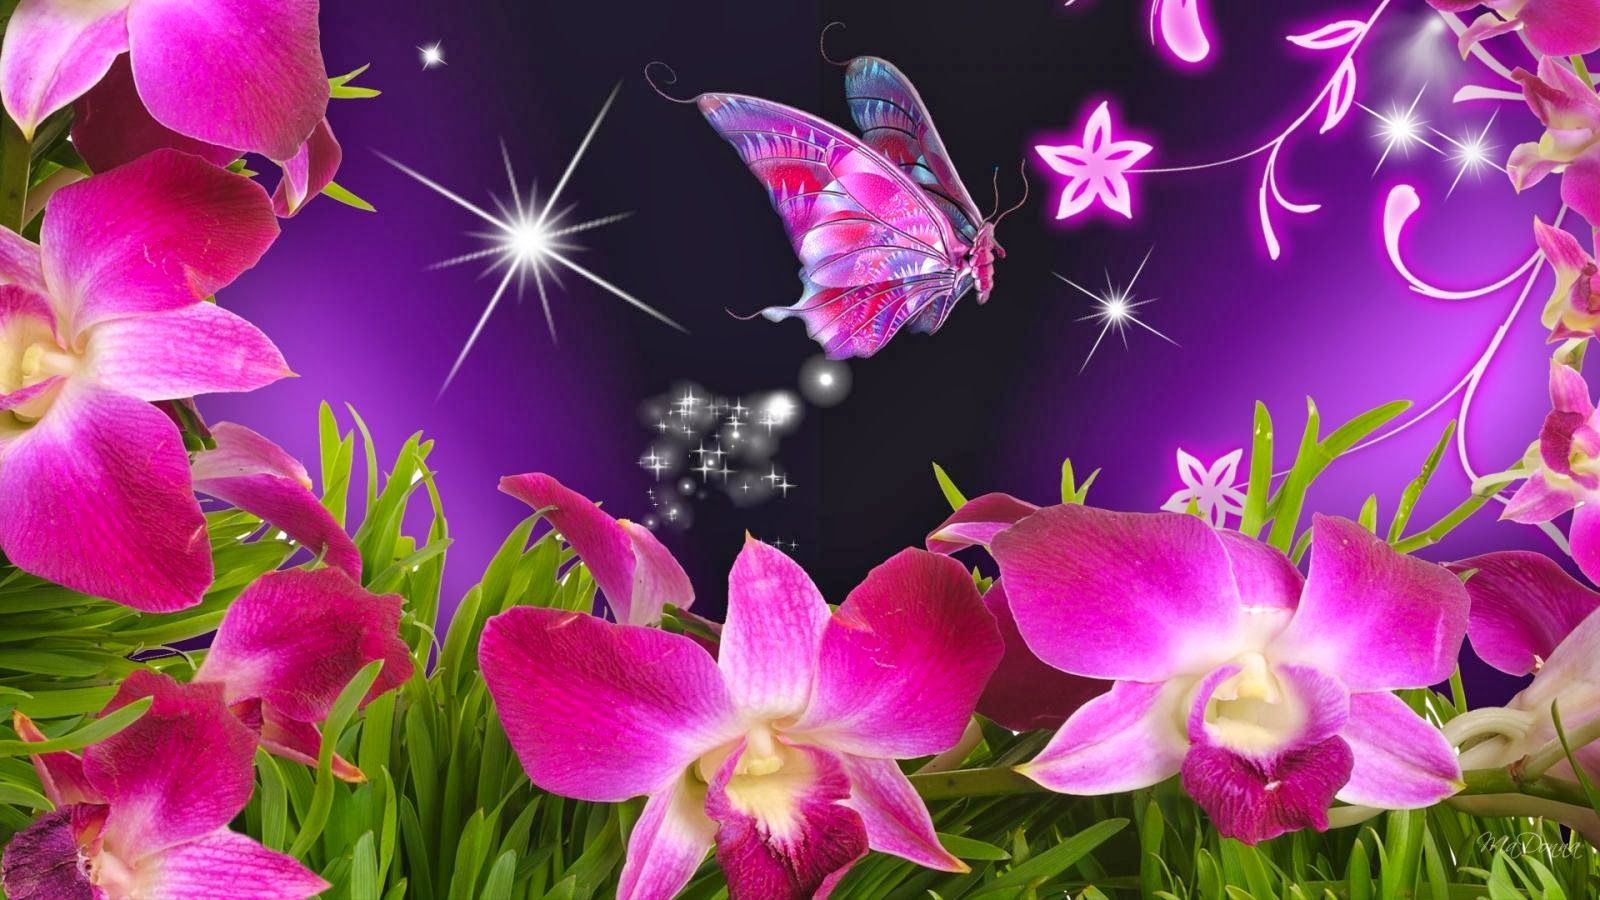 Wallpaper Flowers and Butterflies. Beautiful Flowers and Butterflies Wallpaper Free Download. Wallpaper nature flowers, Butterfly wallpaper, Pink butterfly